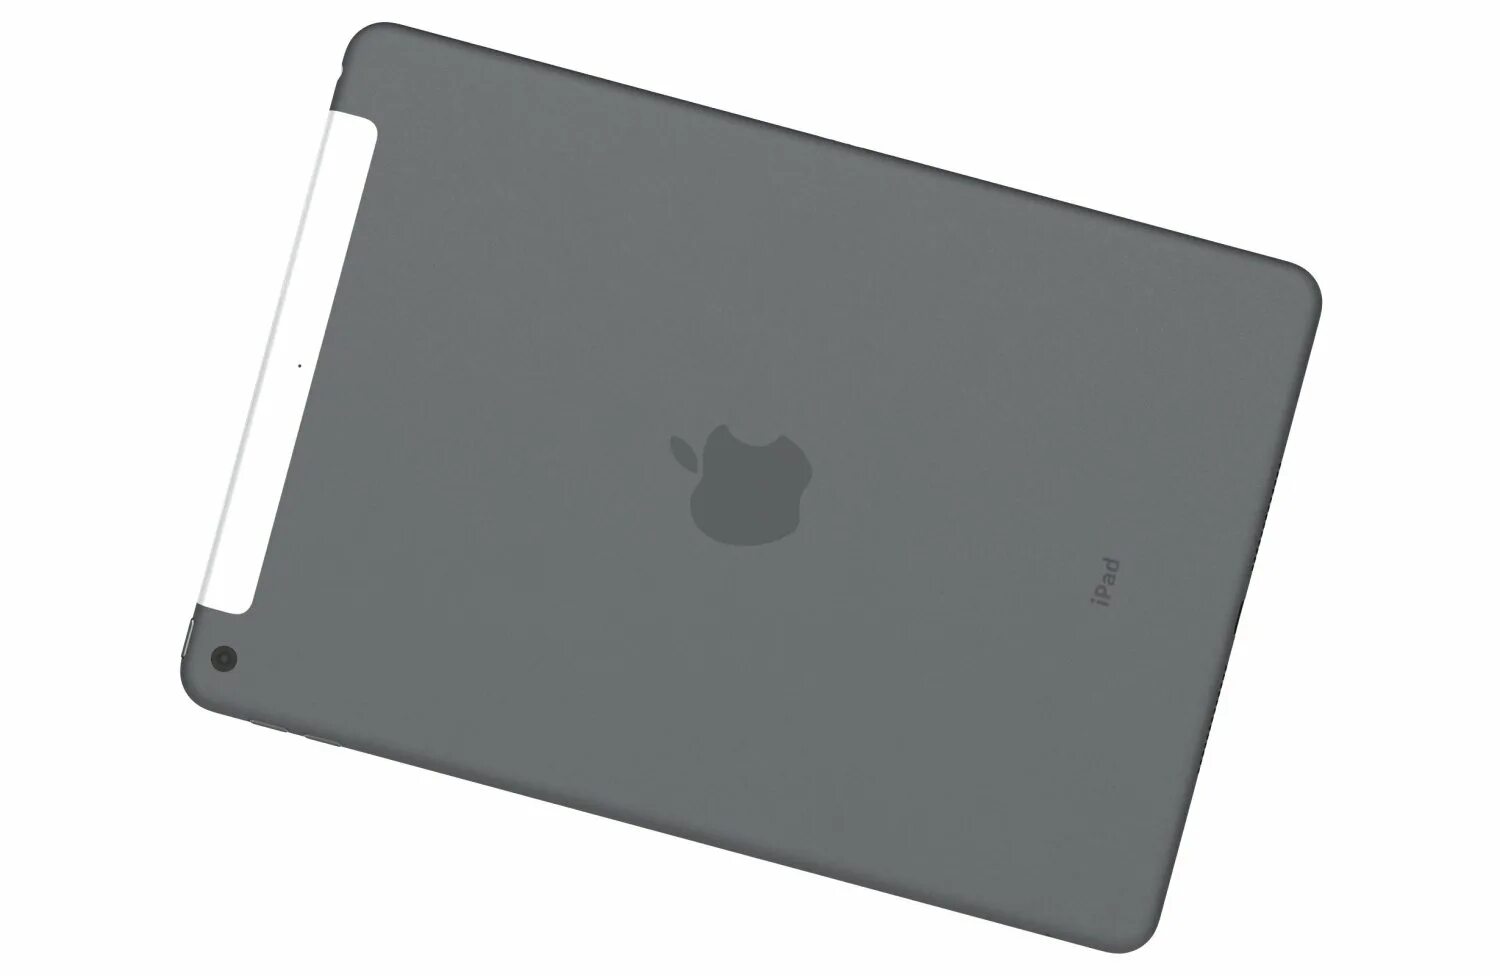 Apple IPAD 8 10.2 (2020). Apple IPAD 10.2” (2021) 256gb Wi-Fi (Space Gray) mk2n3. IPAD 10.2 Space Gray. IPAD 8. Cellular space